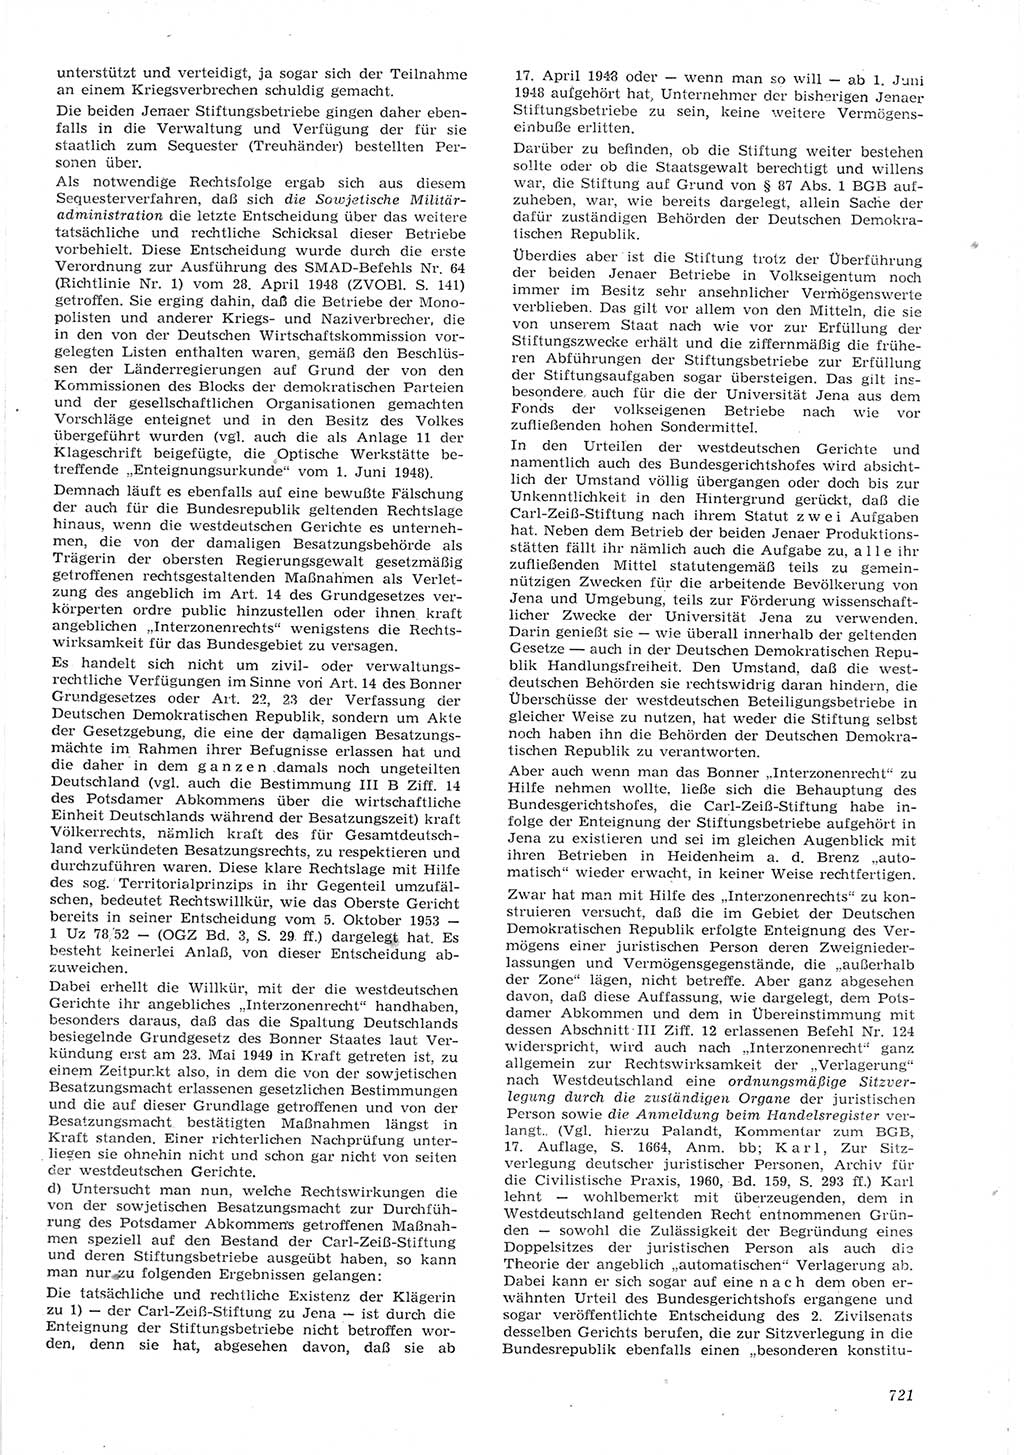 Neue Justiz (NJ), Zeitschrift für Recht und Rechtswissenschaft [Deutsche Demokratische Republik (DDR)], 15. Jahrgang 1961, Seite 721 (NJ DDR 1961, S. 721)